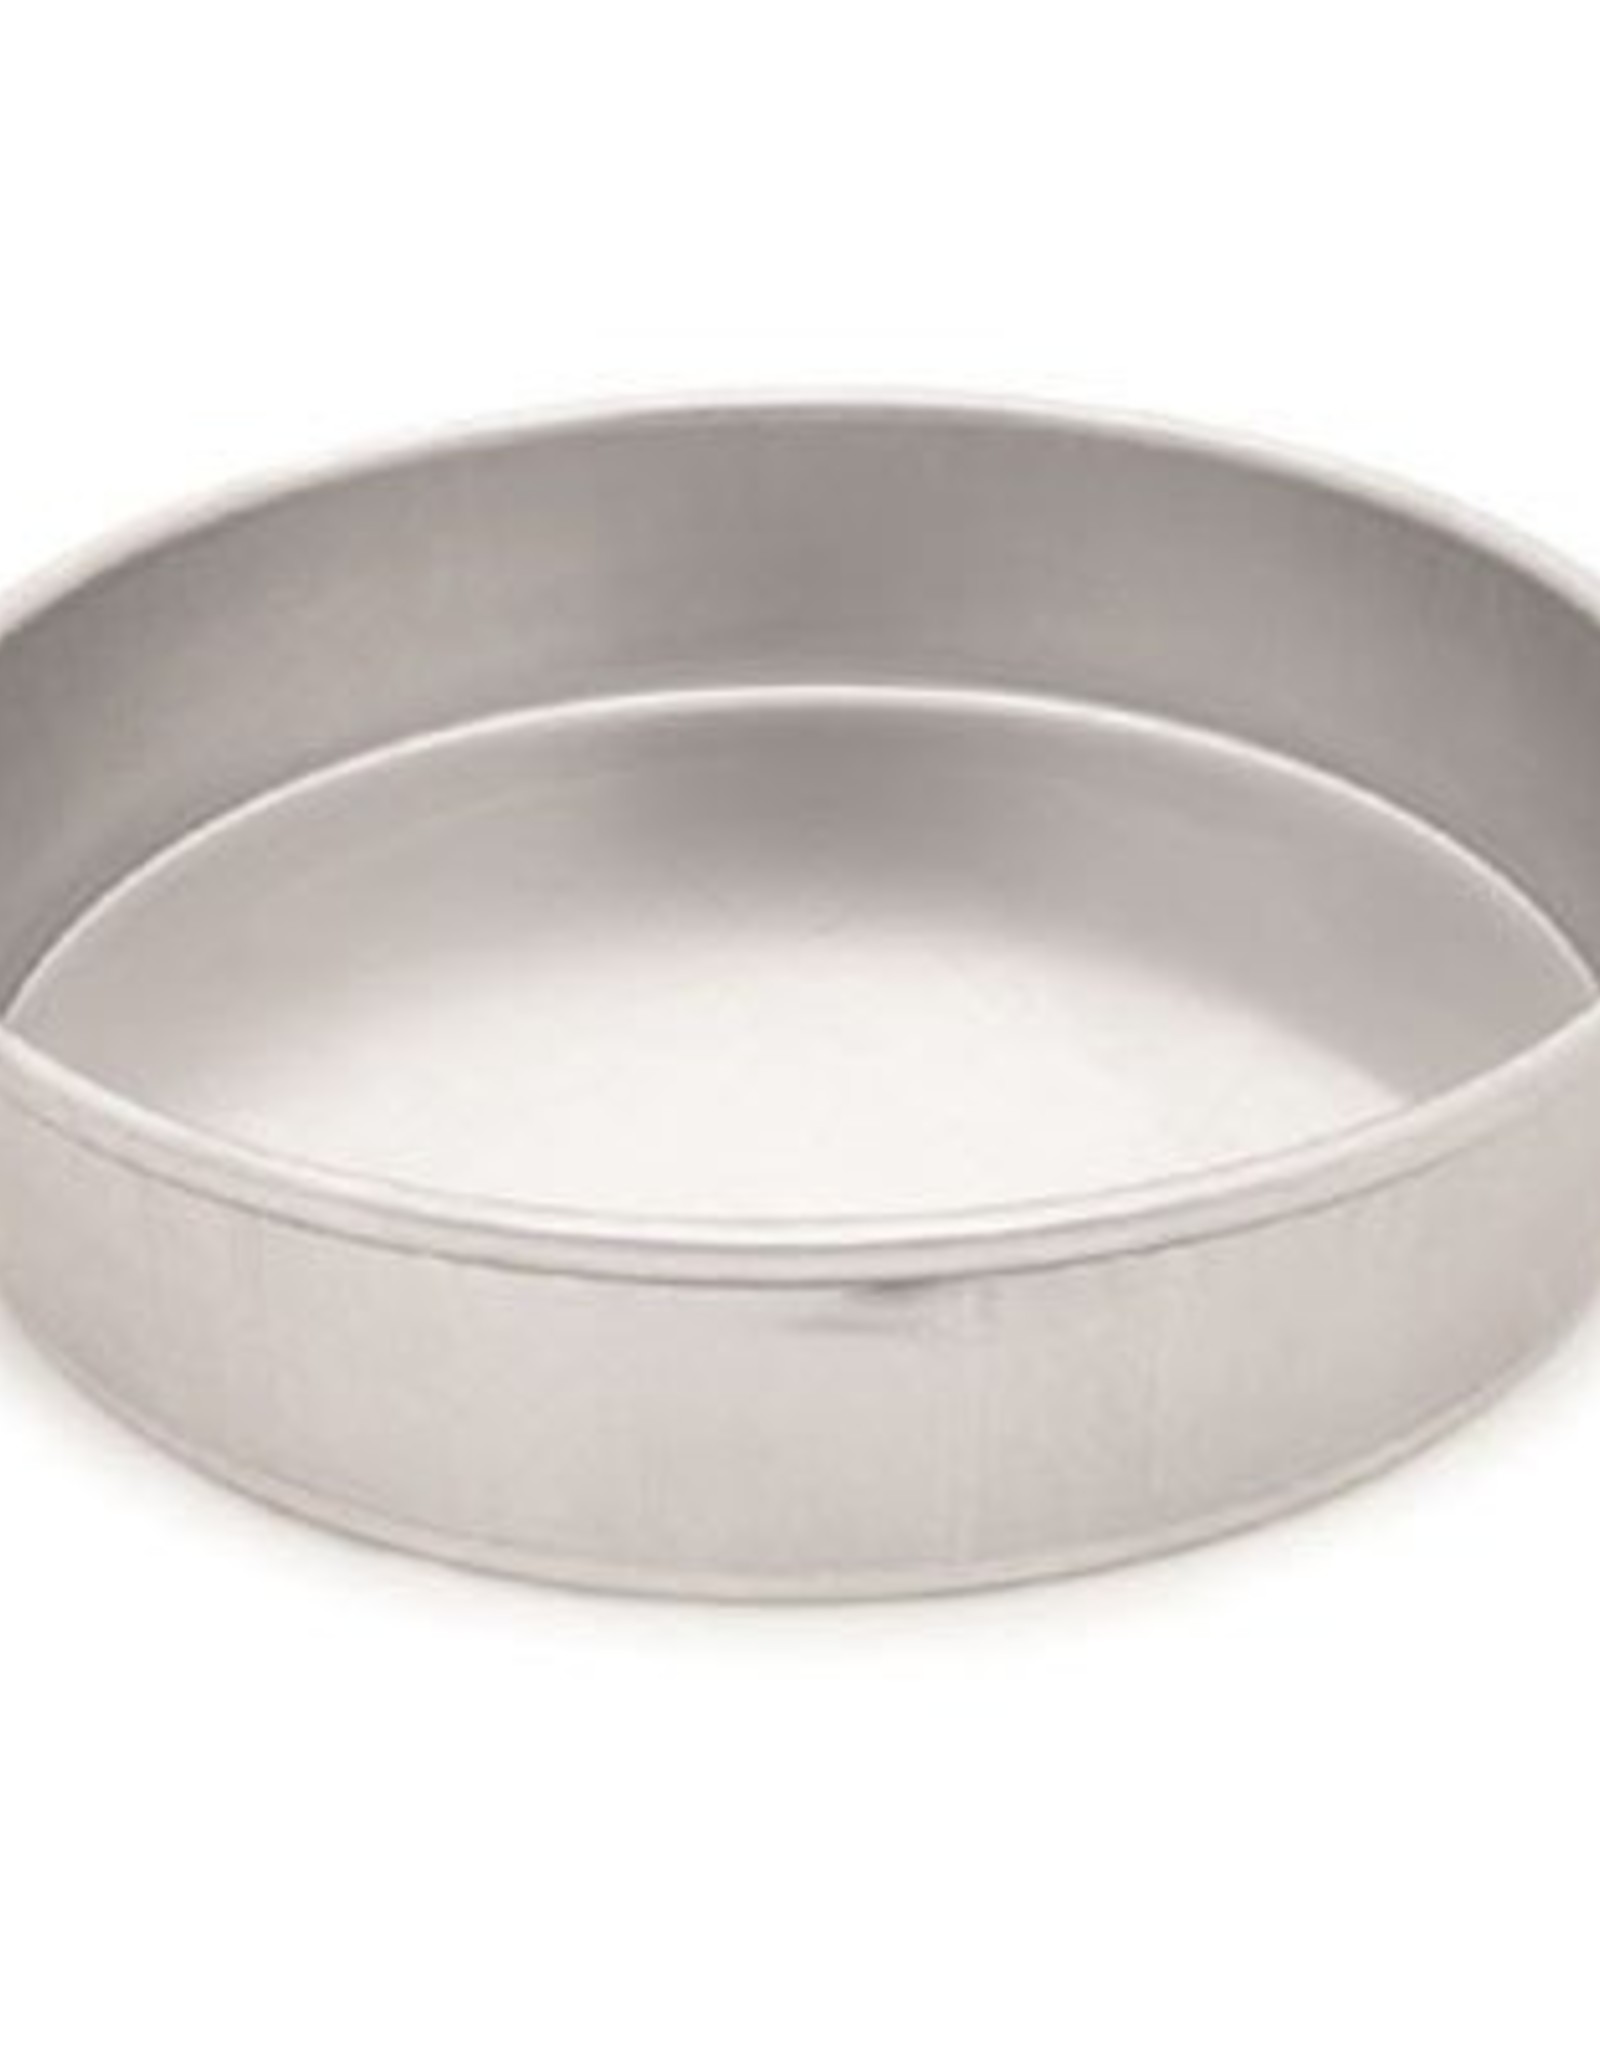 6" X 2" Round Baking Pan